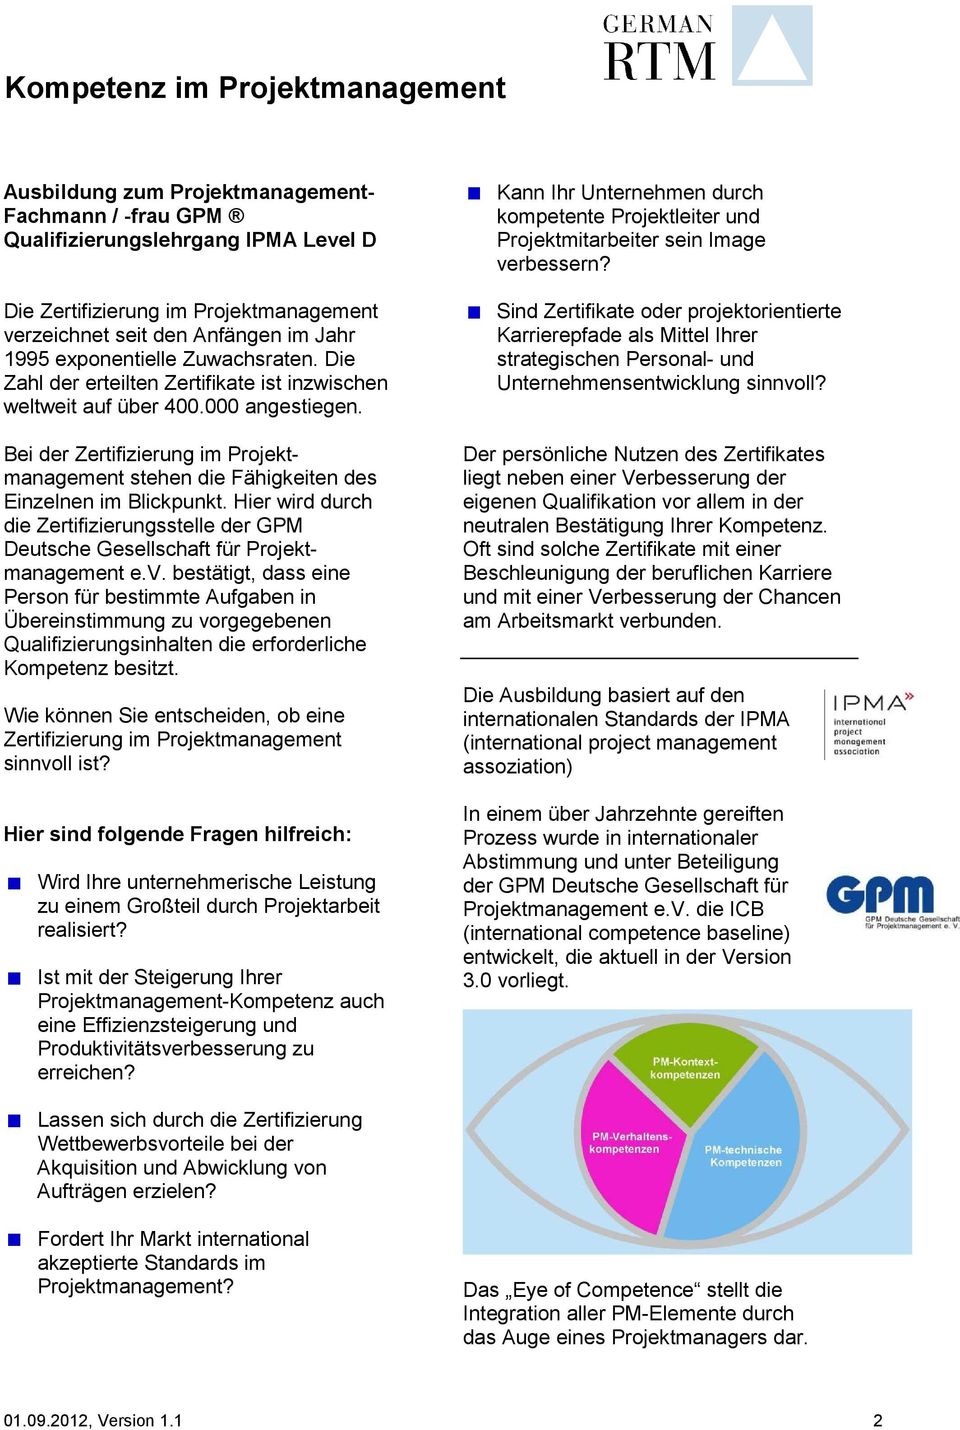 Bei der Zertifizierung im Projektmanagement stehen die Fähigkeiten des Einzelnen im Blickpunkt. Hier wird durch die Zertifizierungsstelle der GPM Deutsche Gesellschaft für Projektmanagement e.v.